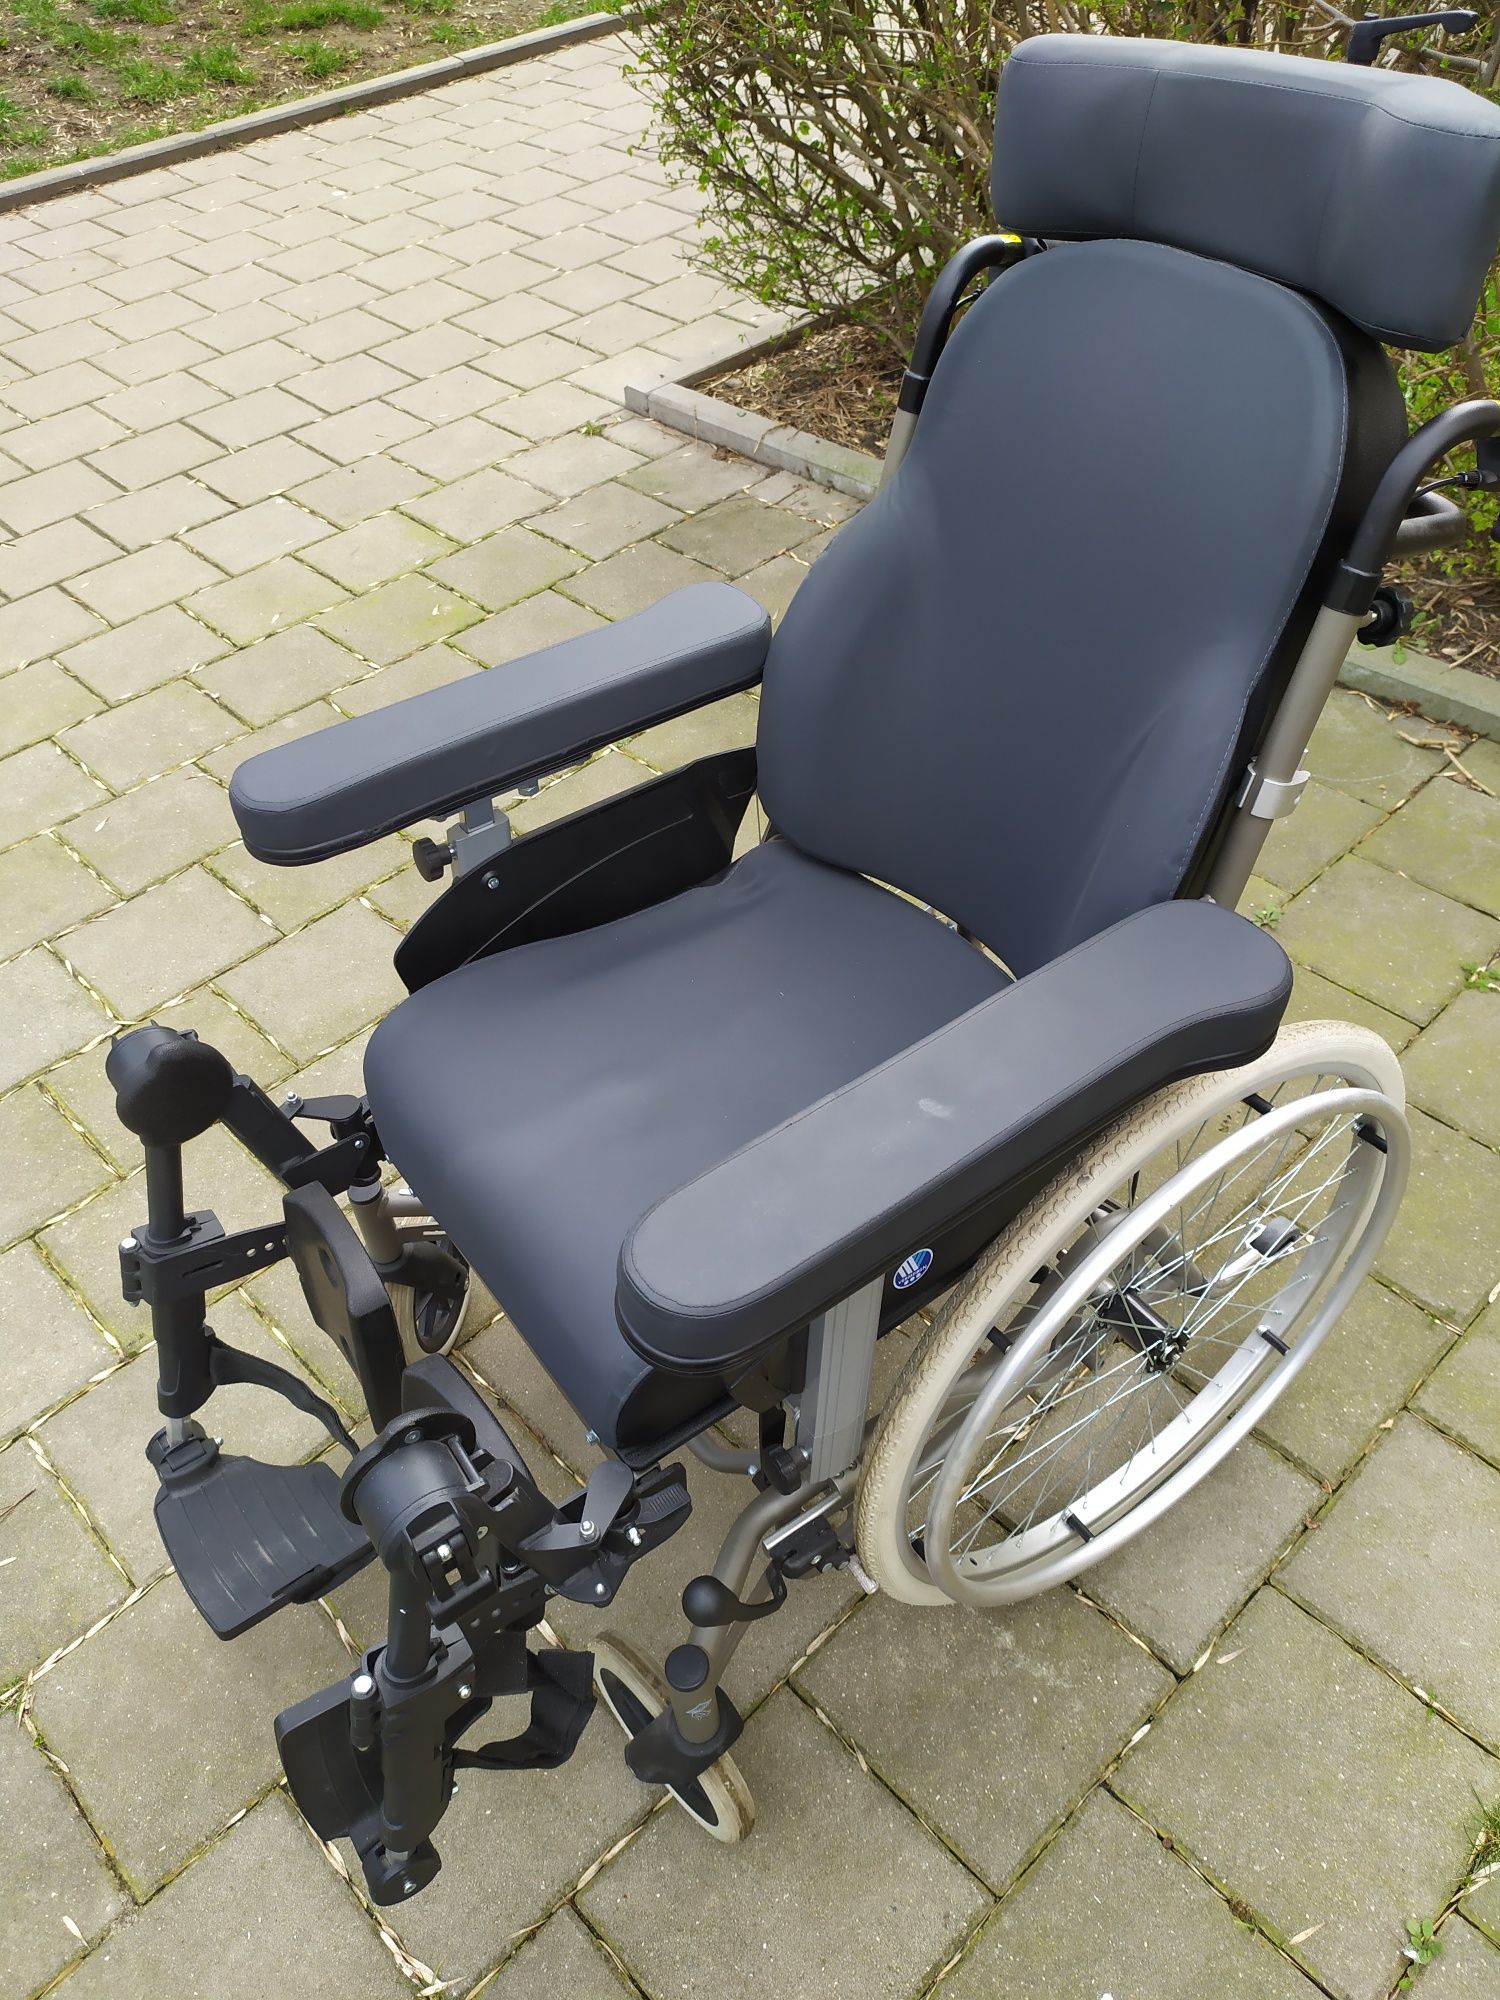 Wózek inwalidzki specjalny